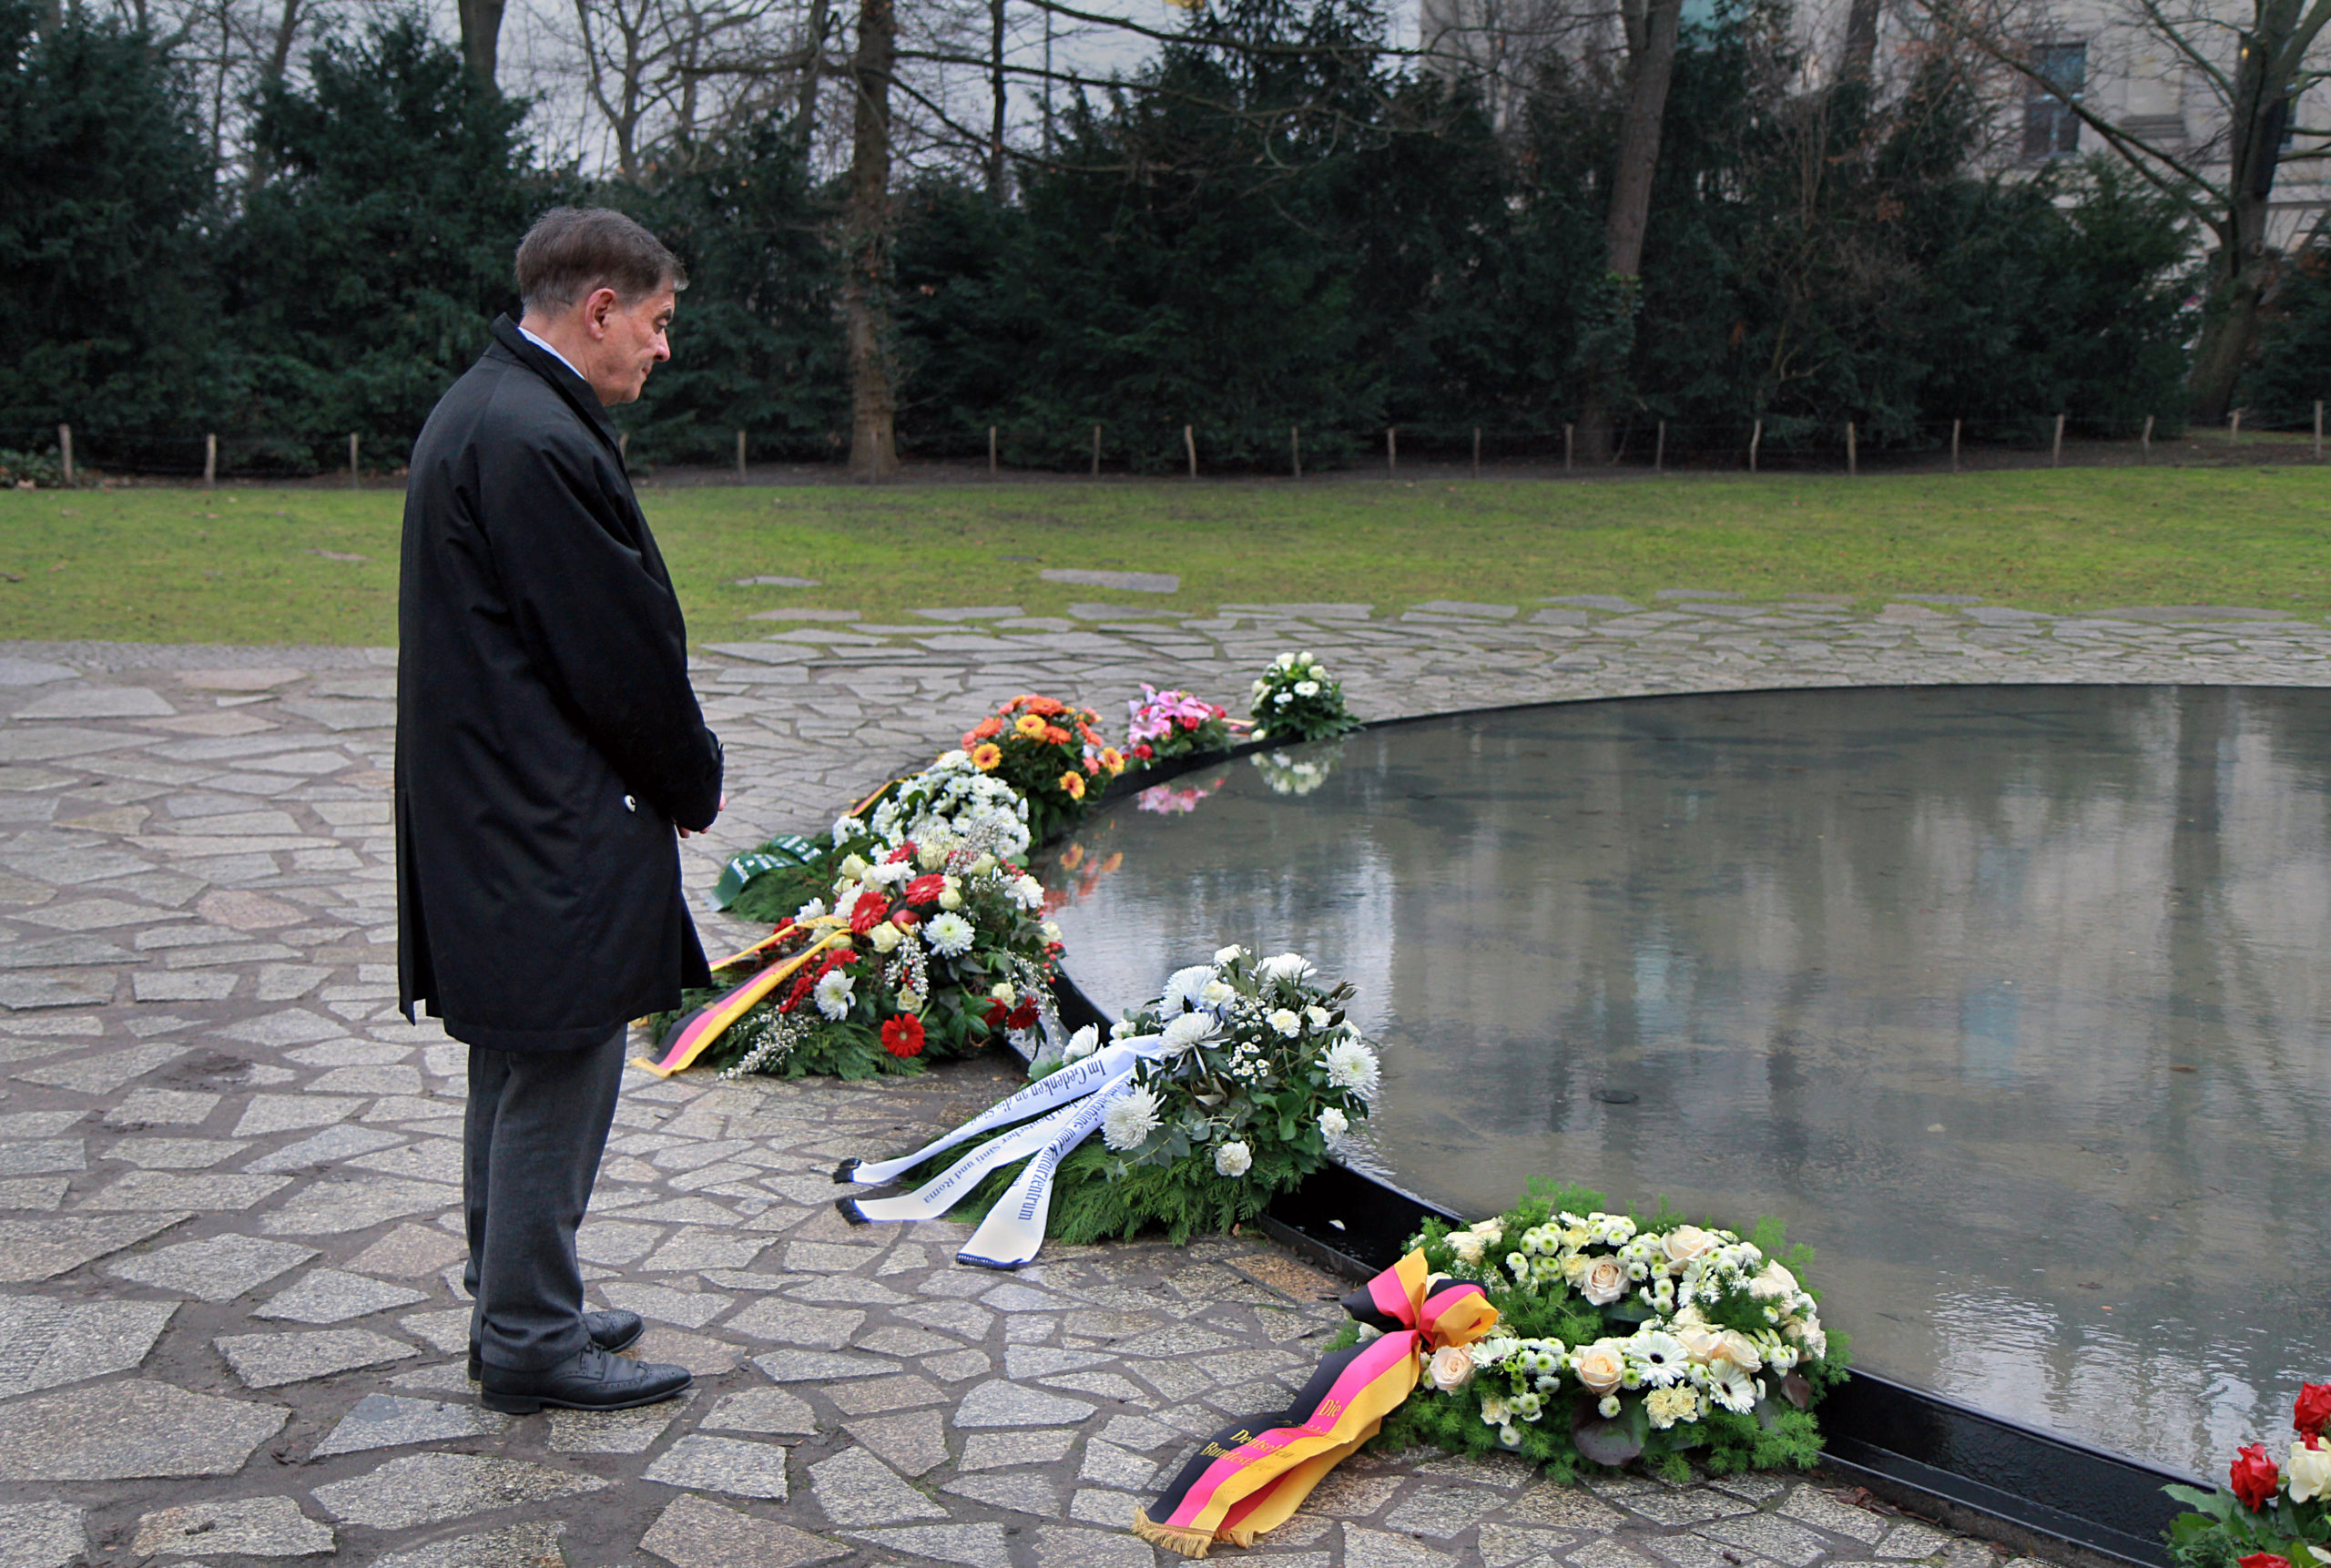 Romani Rose bei der Kranzniederlegung an der Wasserfläche des Denkmals für die im Nationalsozialismus ermordeten Sinti und Roma Europas am 27. Januar 2022 in Berlin